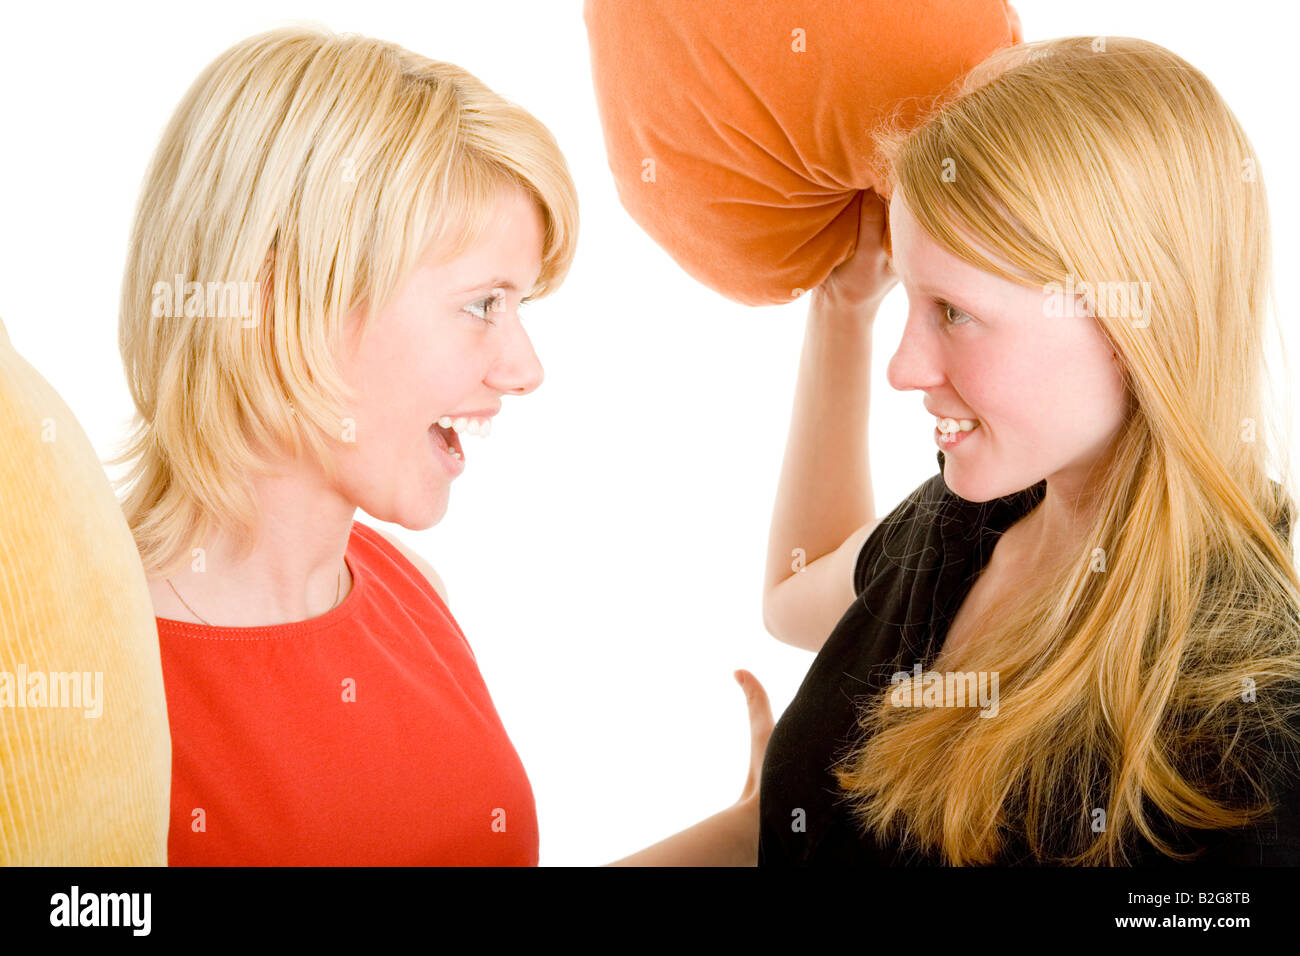 Zwei blonde Mädchen veranstalten eine Kissenschlacht Models v l n r Lisa Marquardt Anne Noack Stock Photo